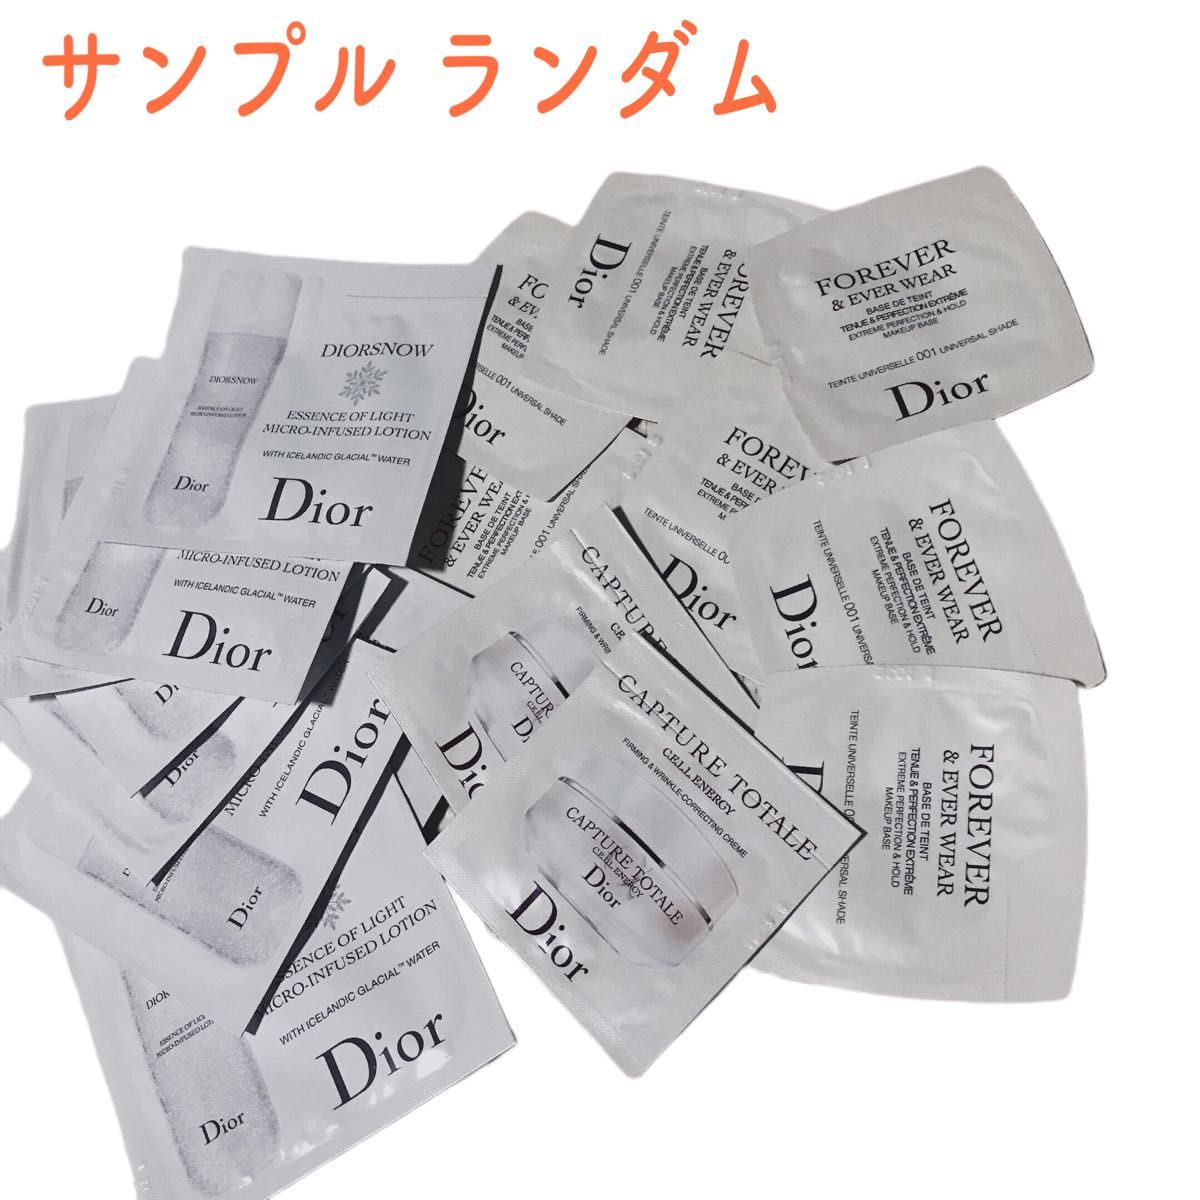 【新品未使用】ディオール Dior マキシマイザー 050【希少・数量限定・入手困難】